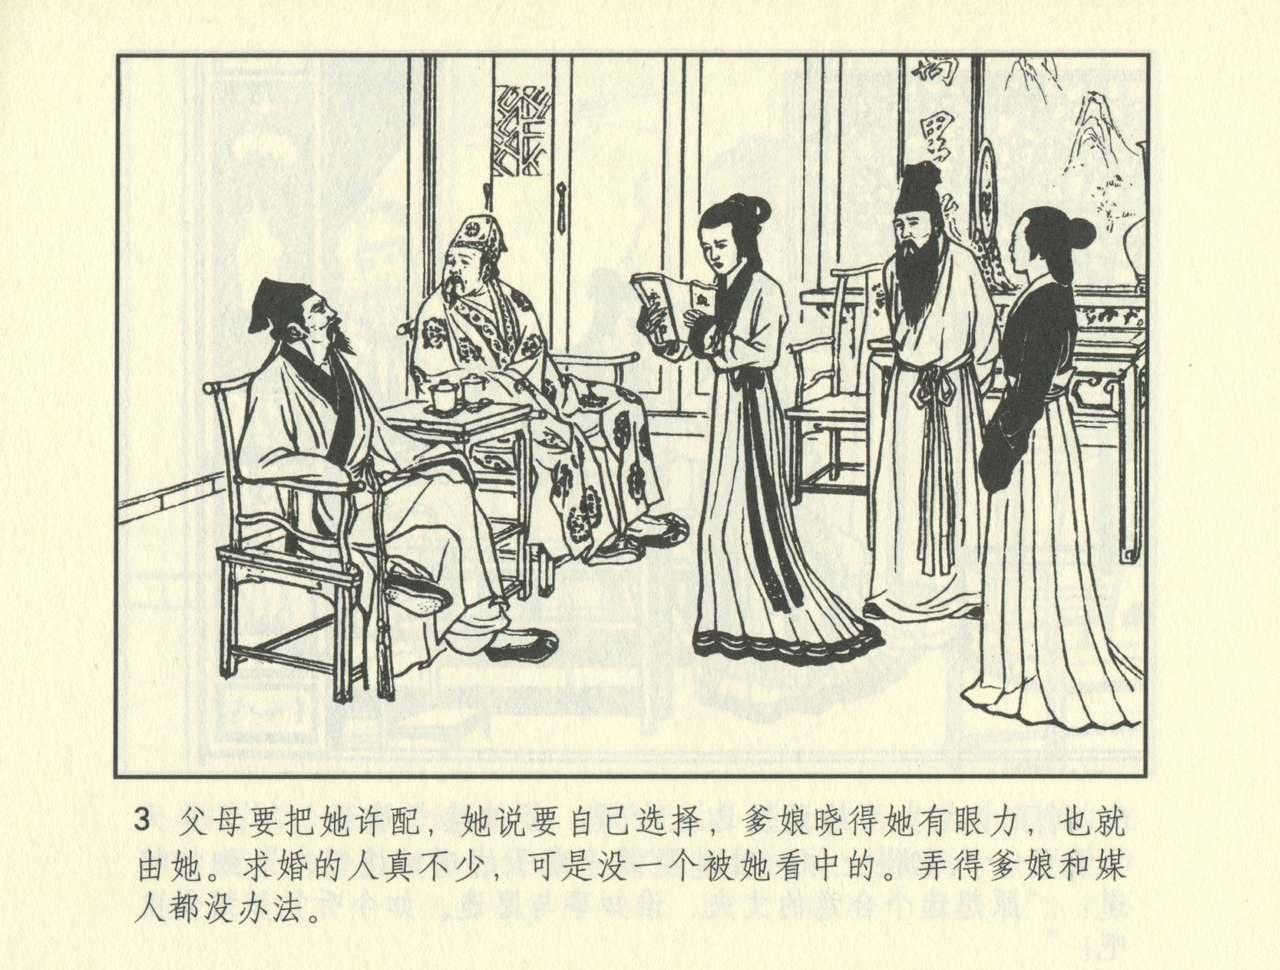 聊斋志异 张玮等绘 天津人民美术出版社 卷二十一 ~ 三十 475